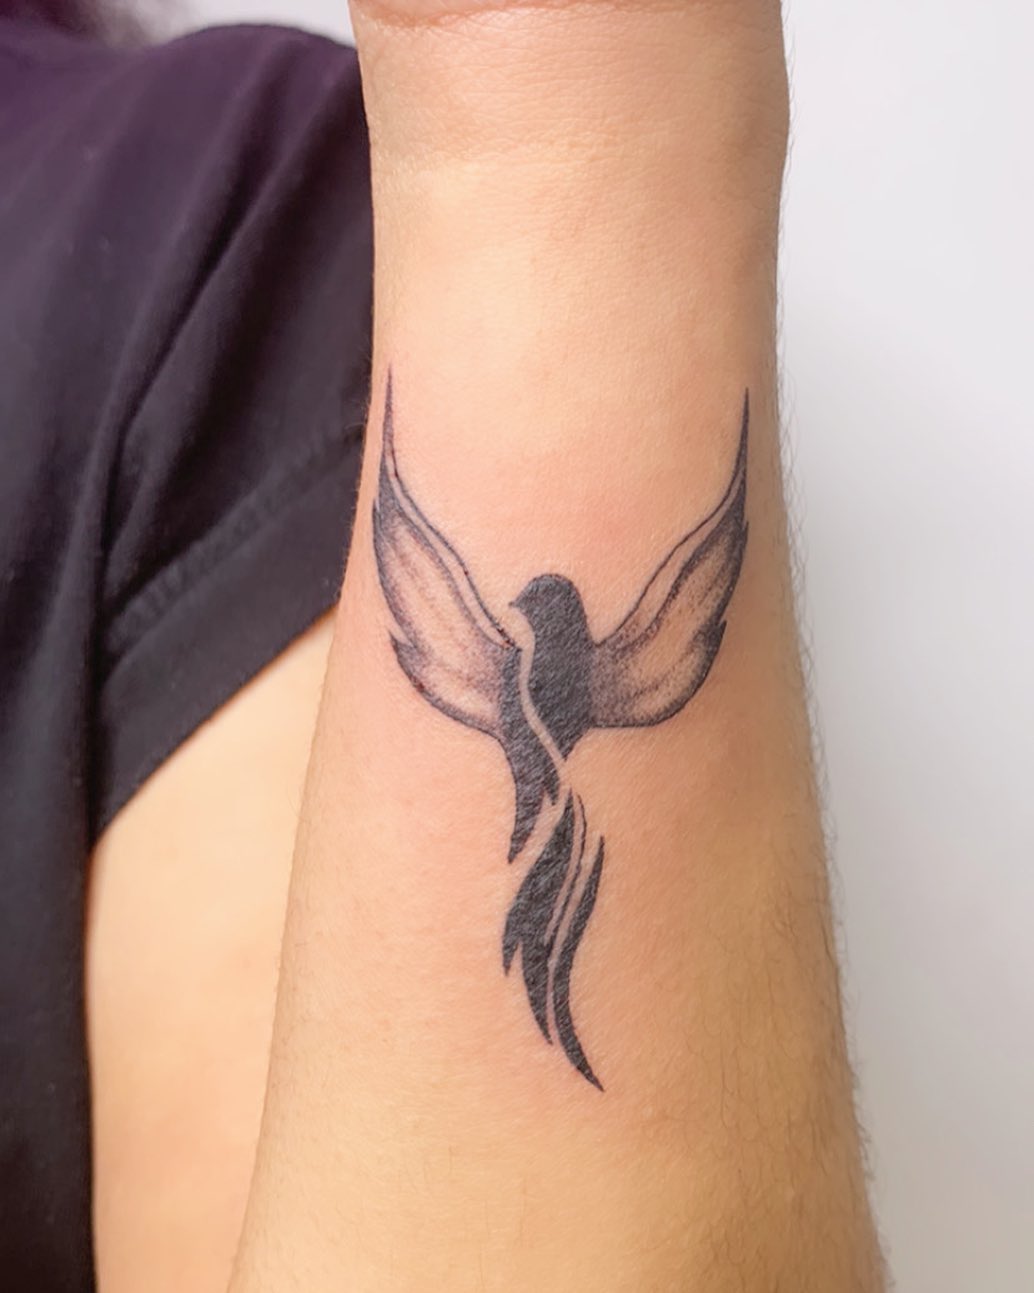 Small Phoenix Tattoos For Wrist